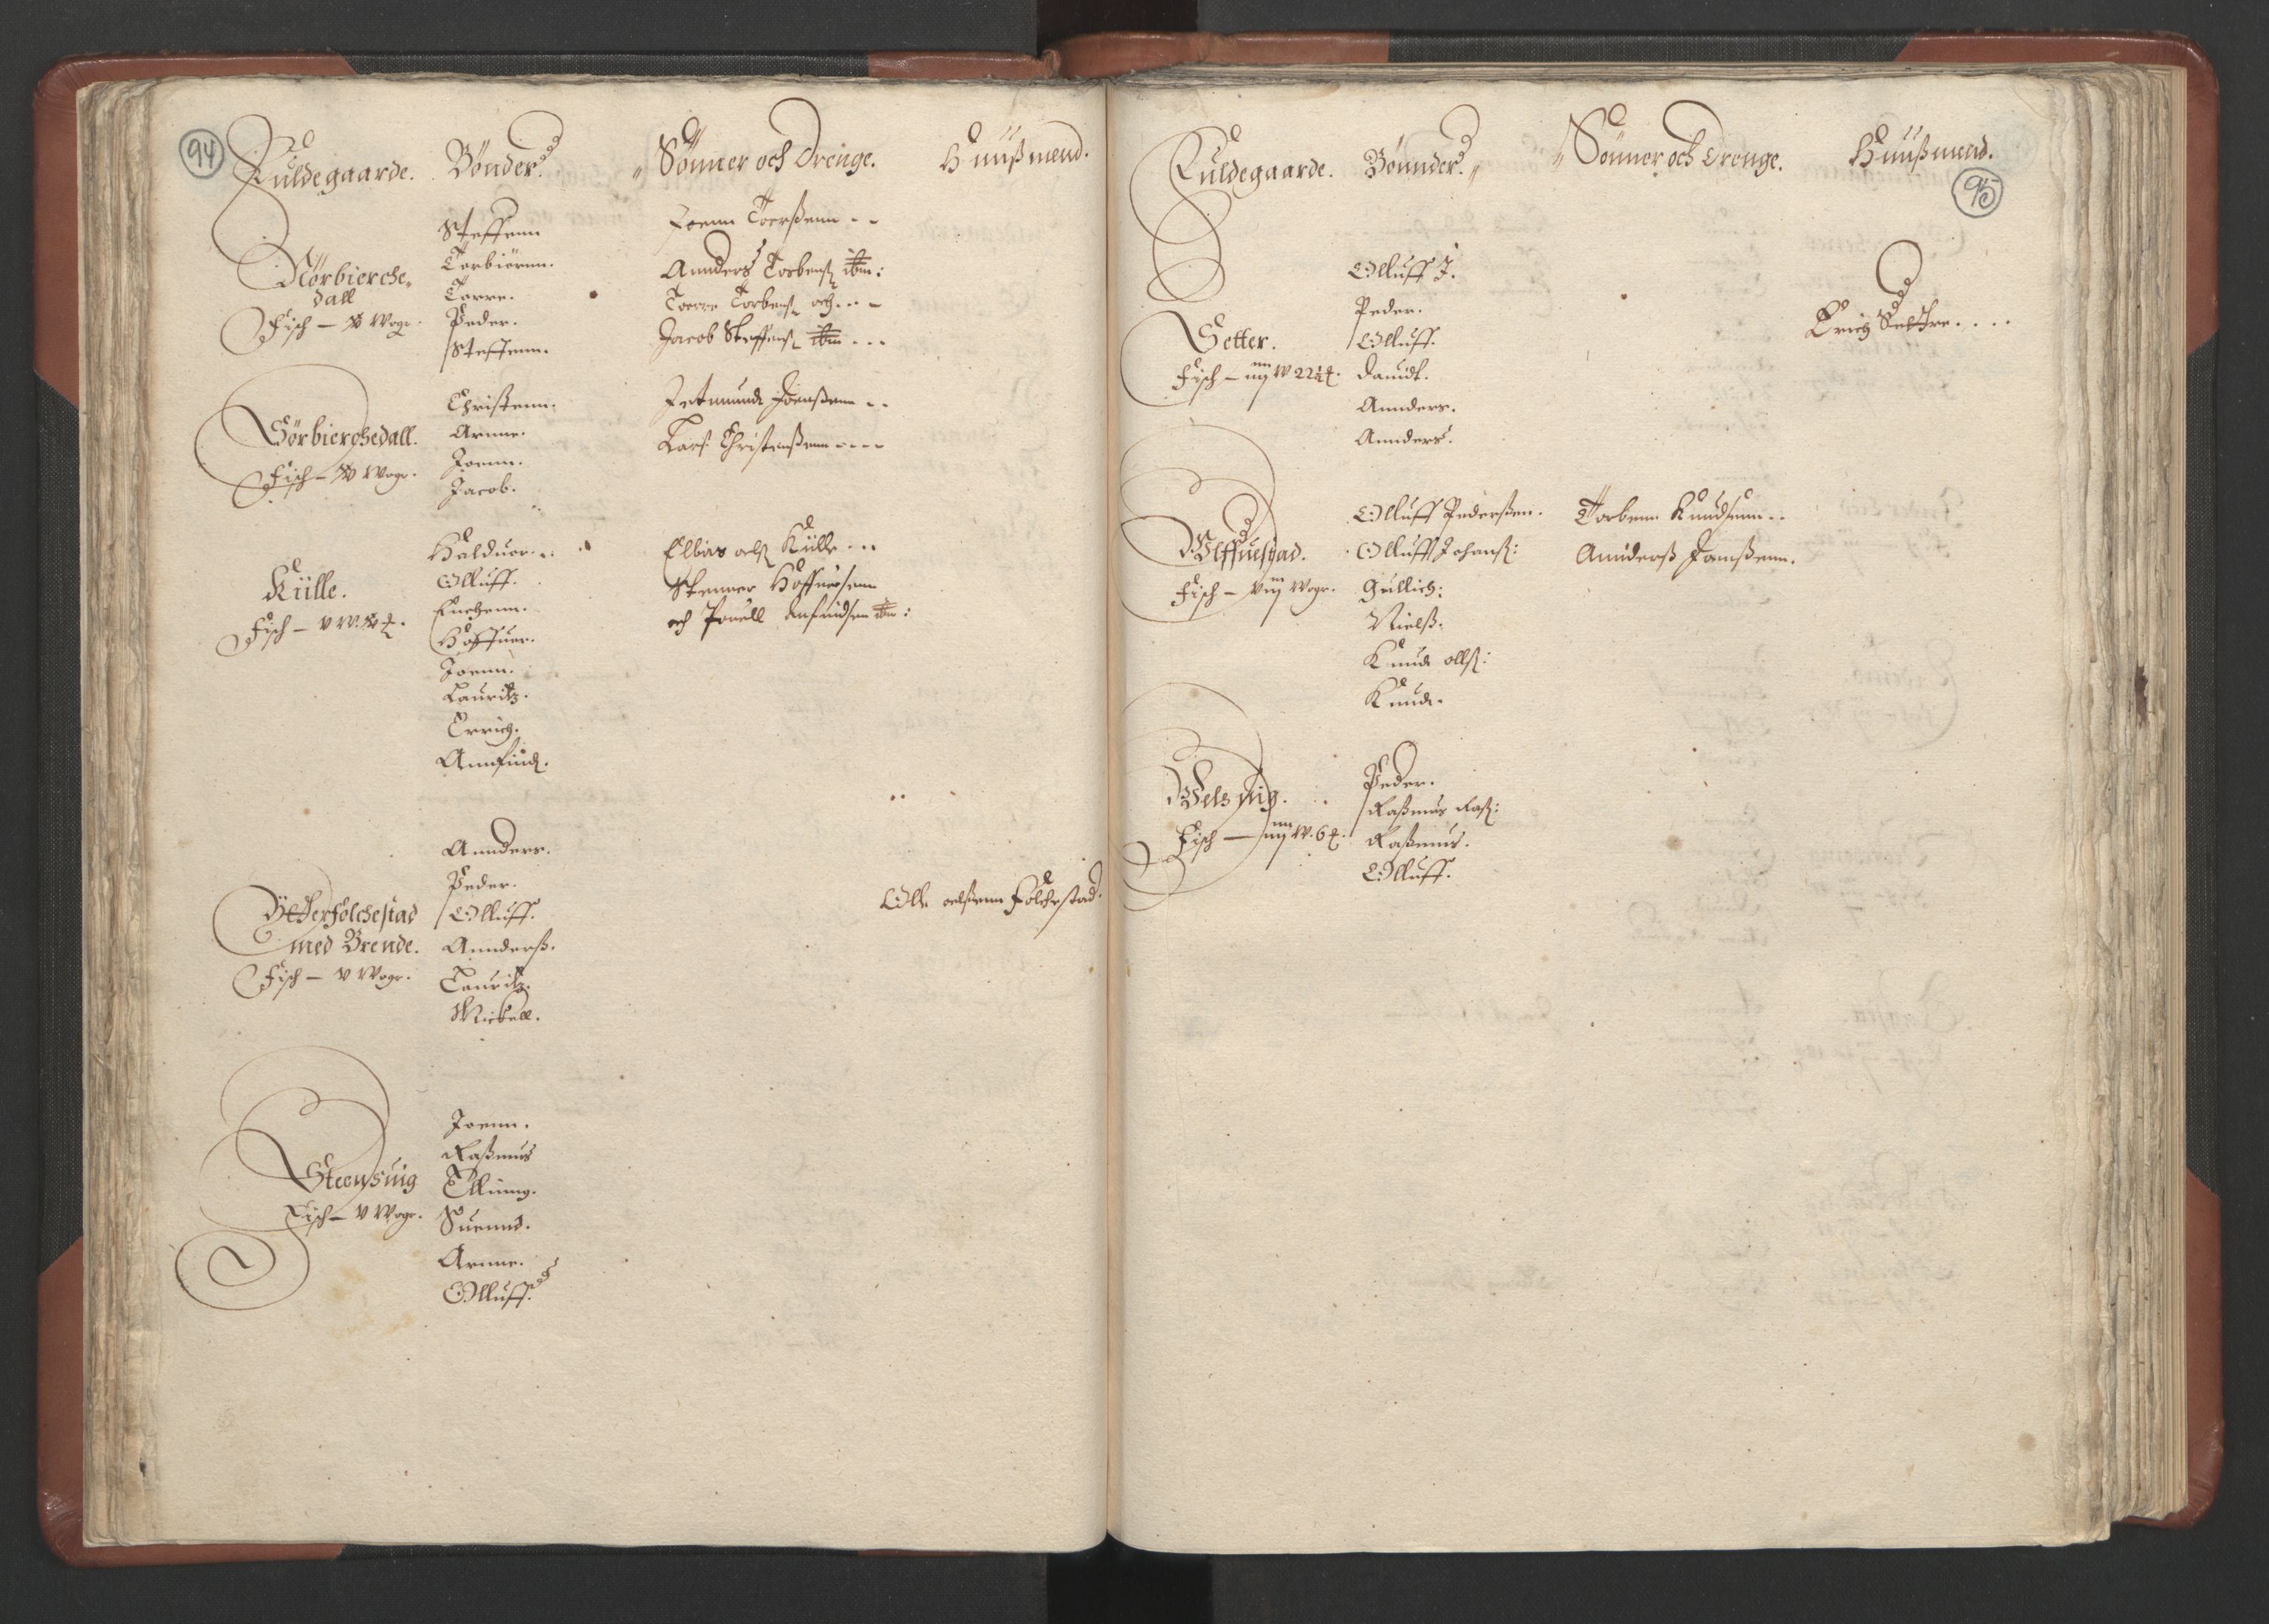 RA, Bailiff's Census 1664-1666, no. 16: Romsdal fogderi and Sunnmøre fogderi, 1664-1665, p. 94-95